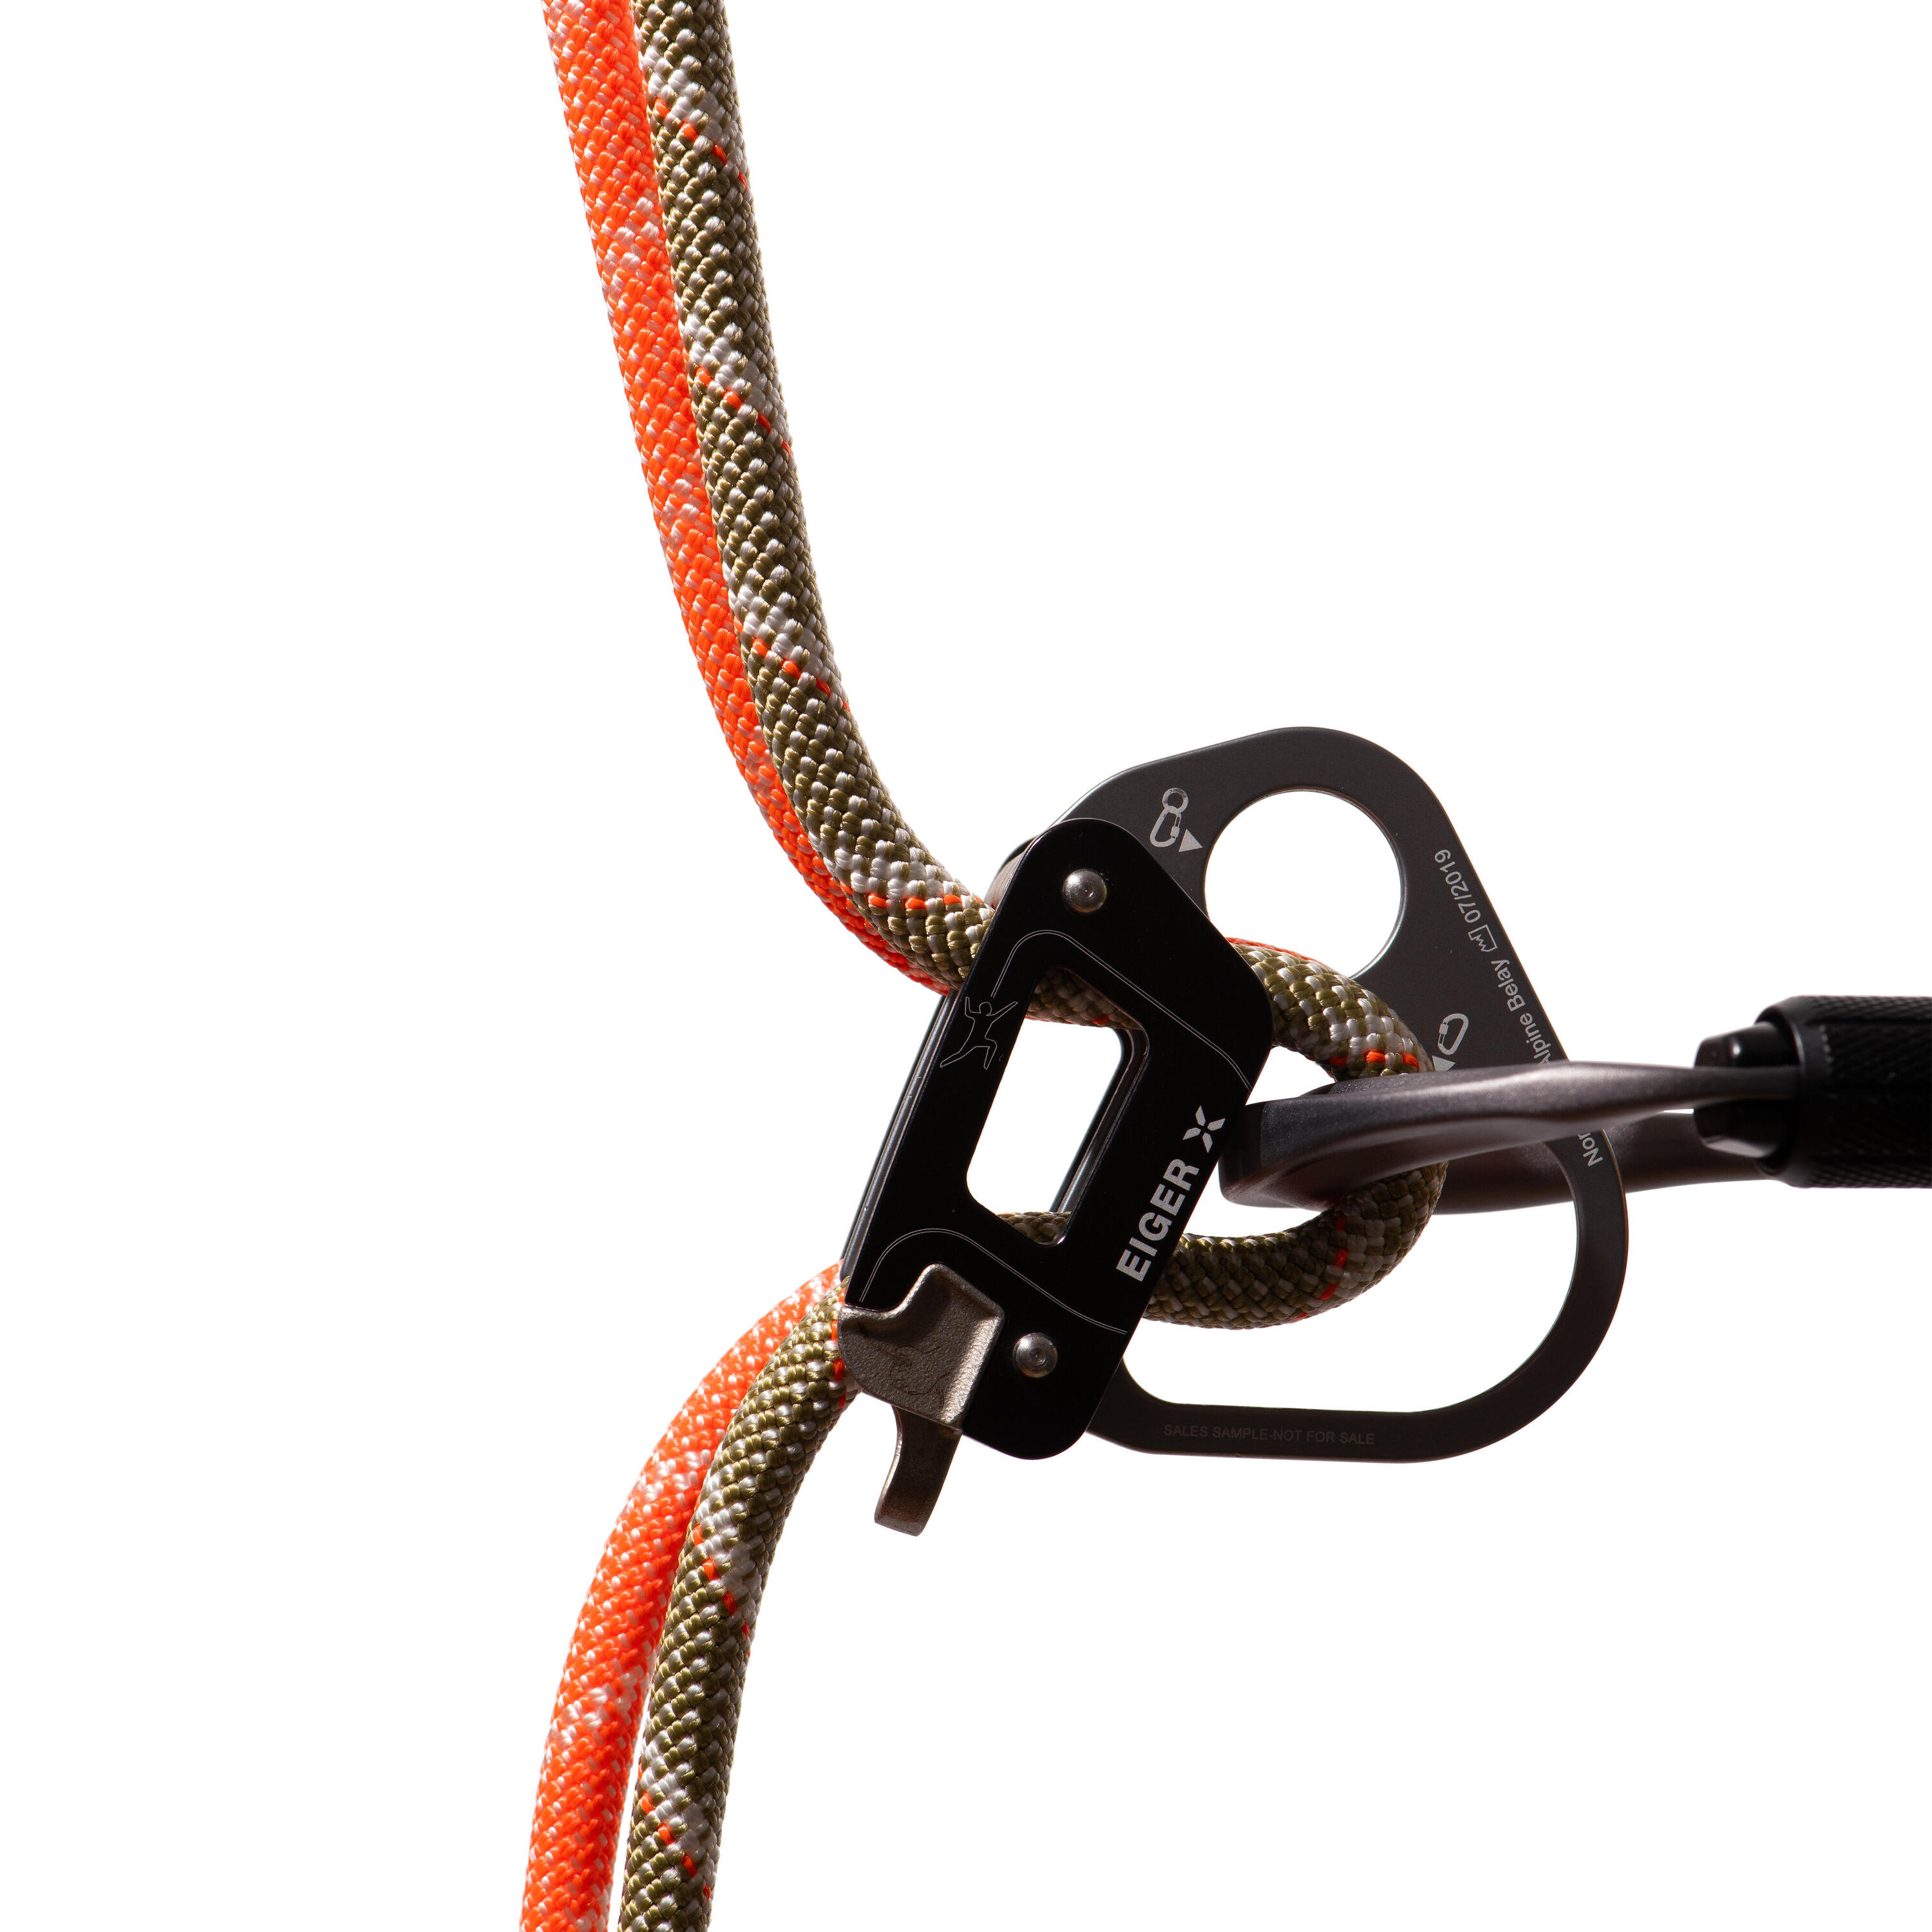 Alpine Classic Half Rope 8.0 mm x 60m - Orange 4/4